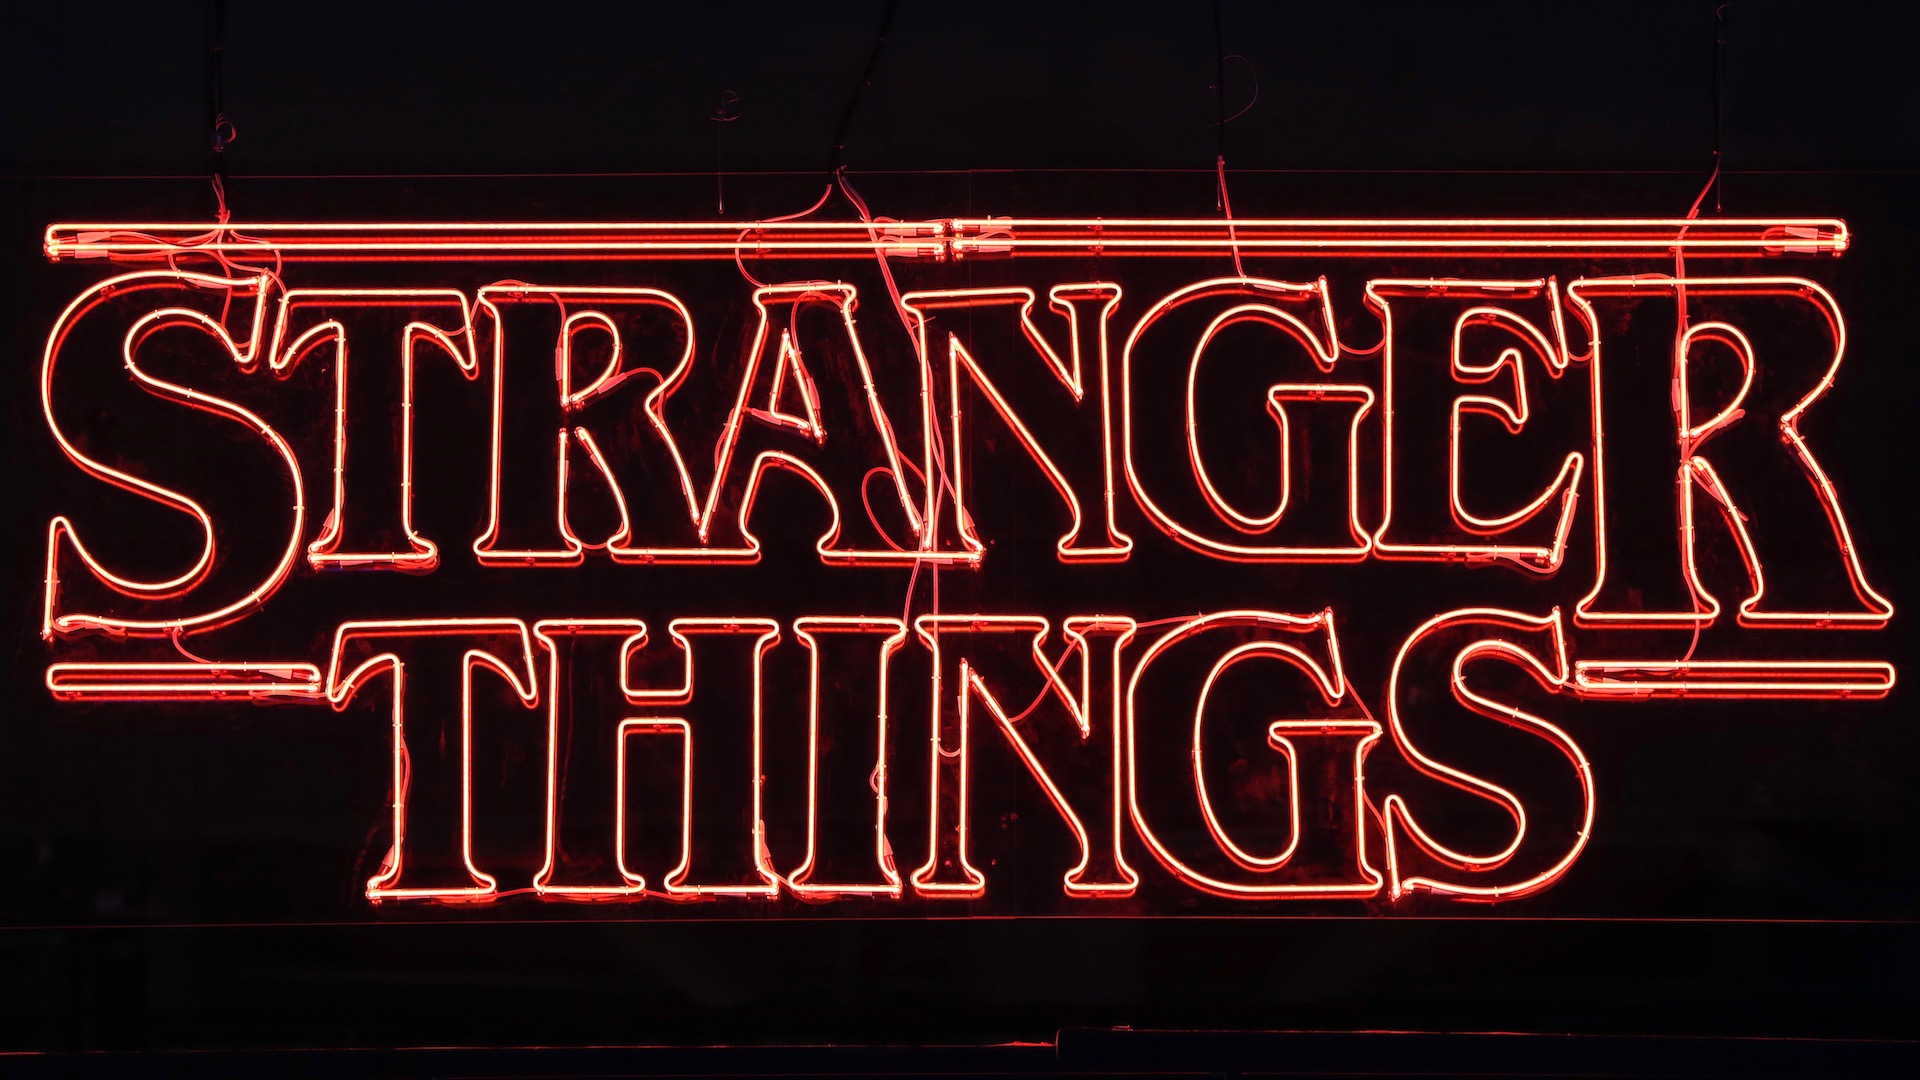 strangerthingslogo #stranger #things #logo #red #black - Carmine, HD Png  Download - vhv